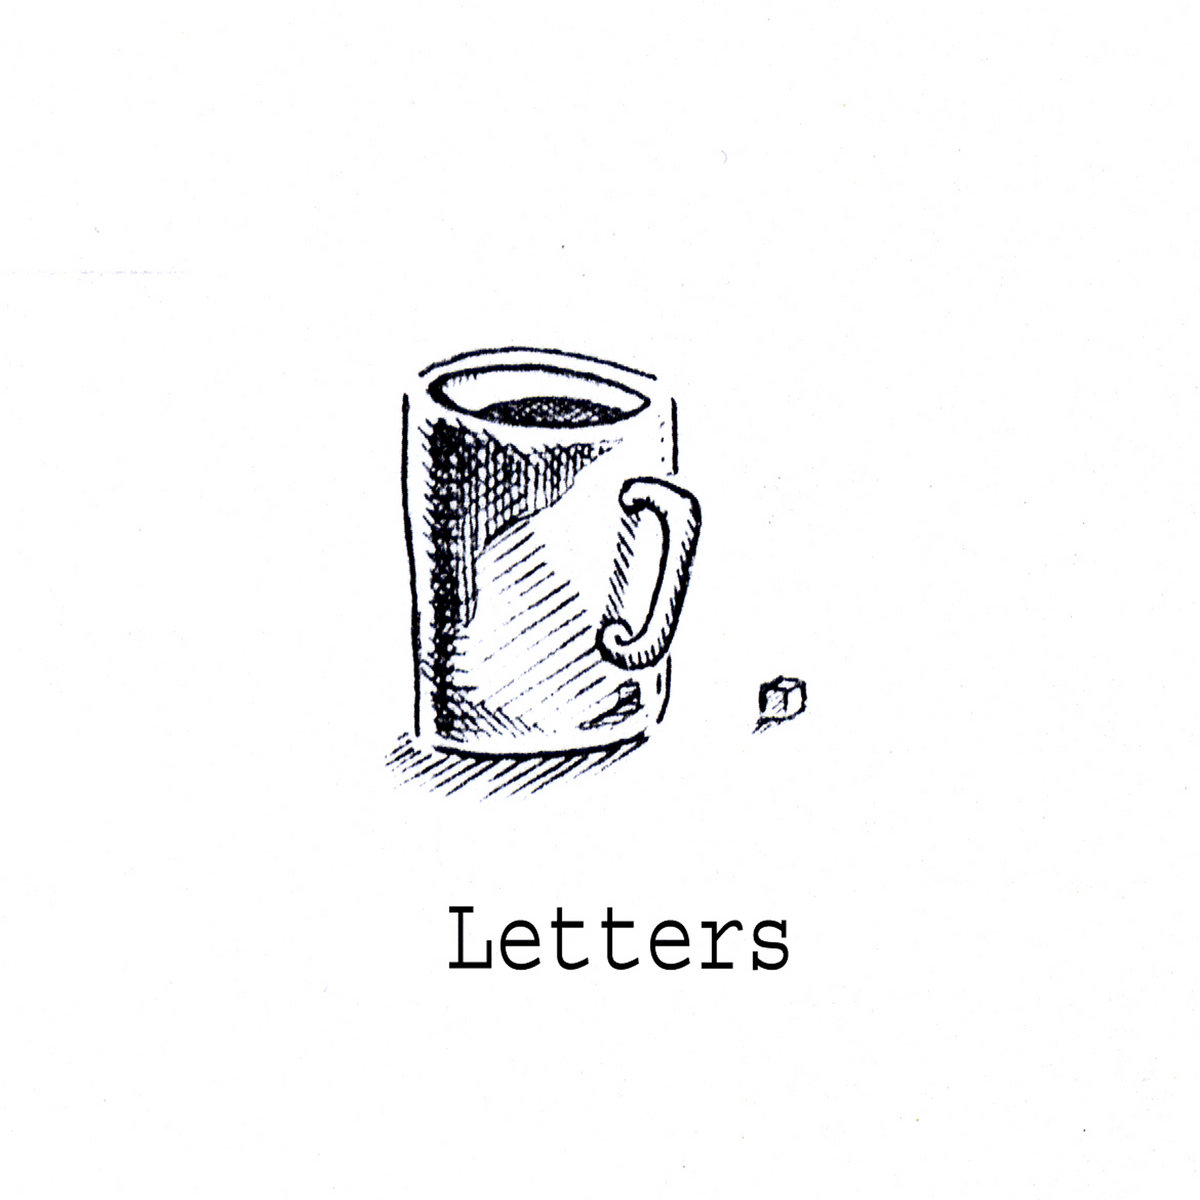 h.artmann - Letters